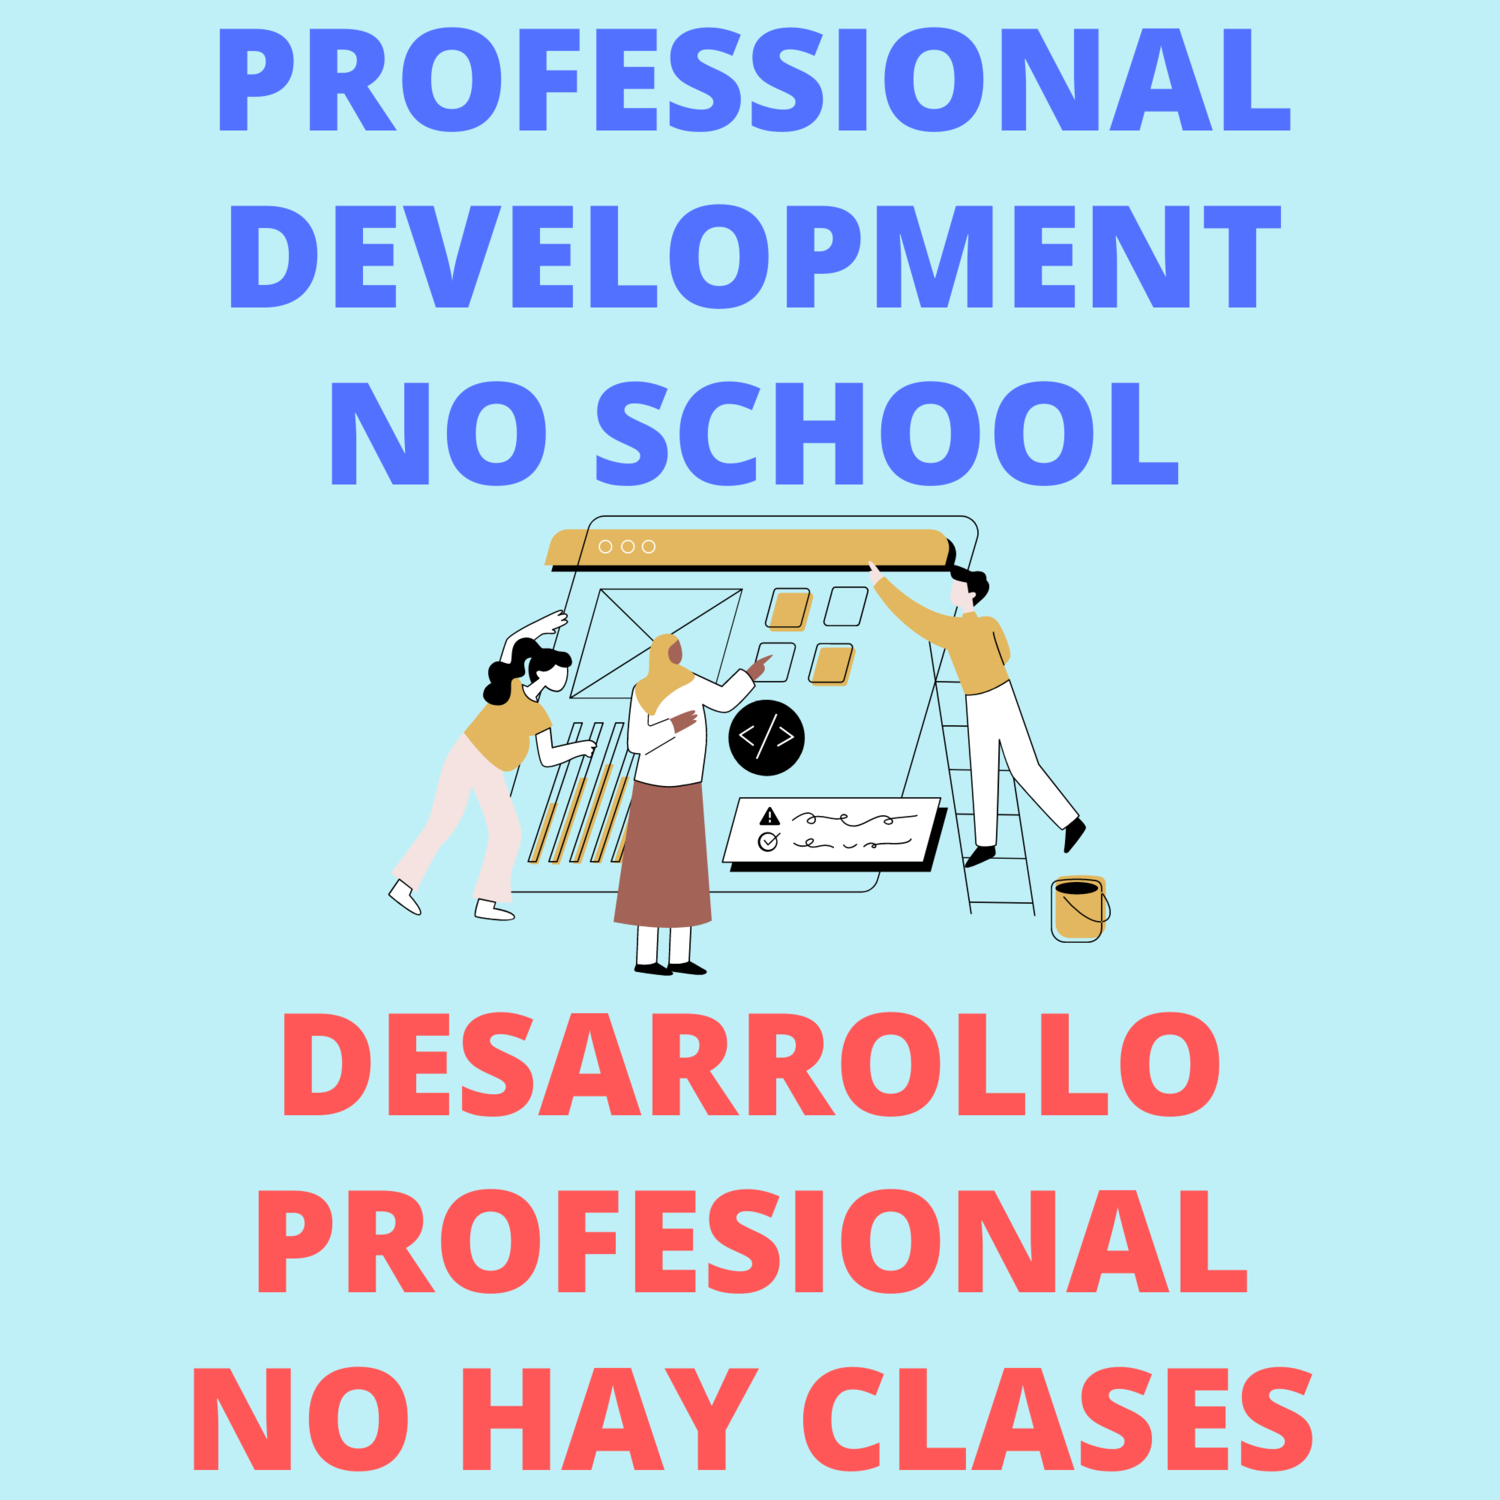 Día de Desarrollo Profesional - No hay clases